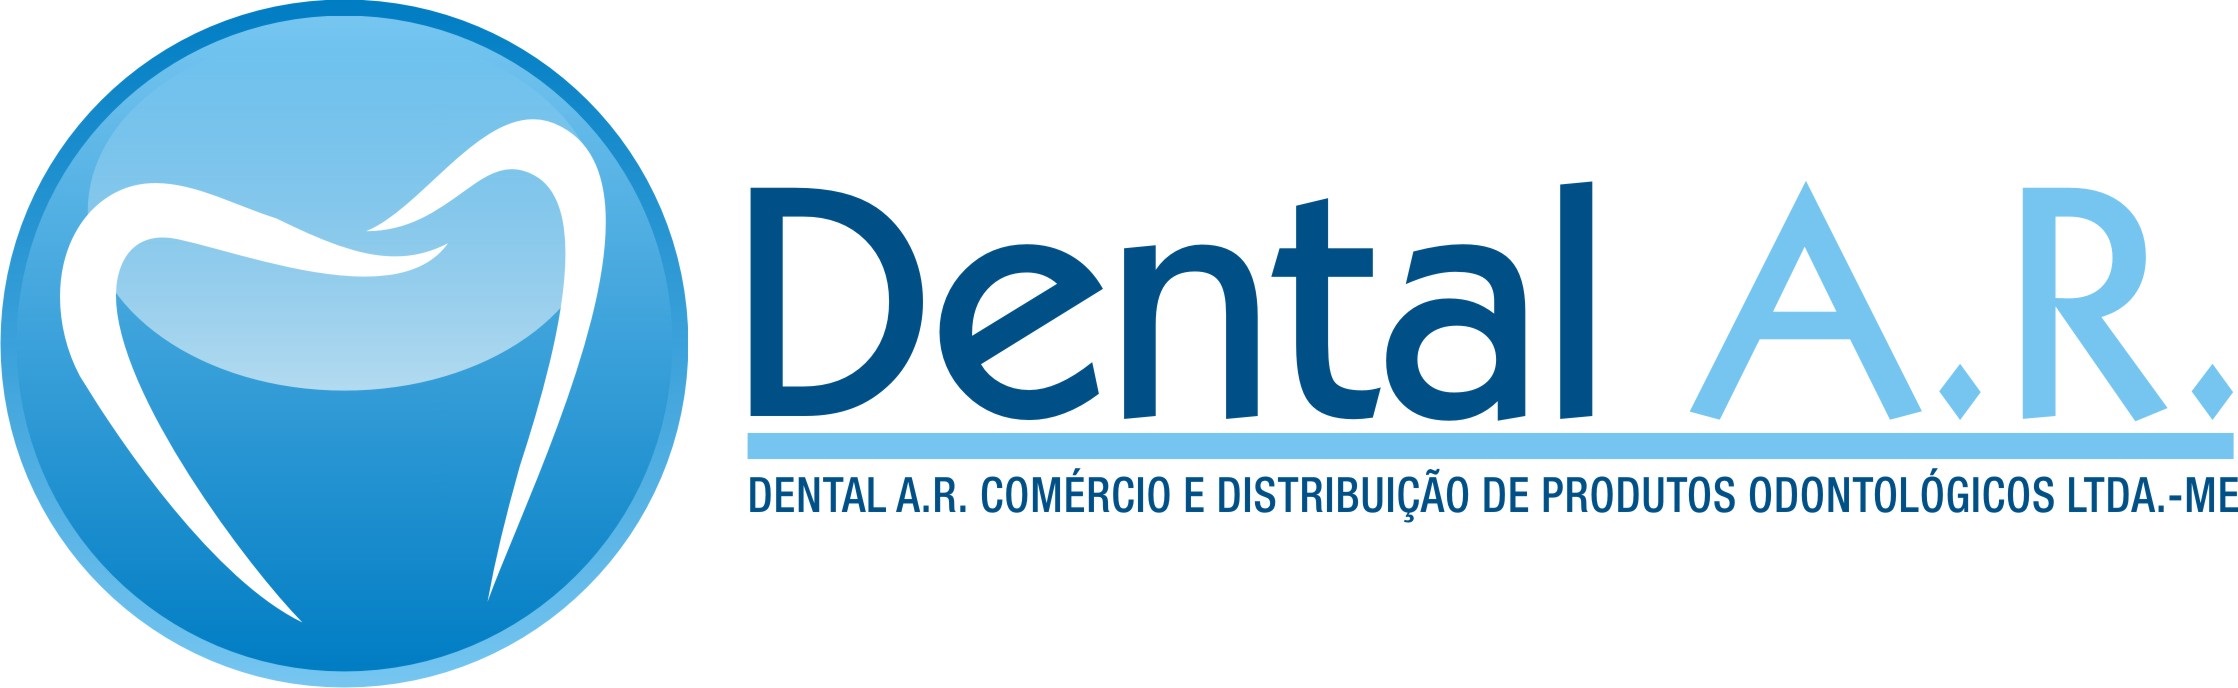 Dental A.R.